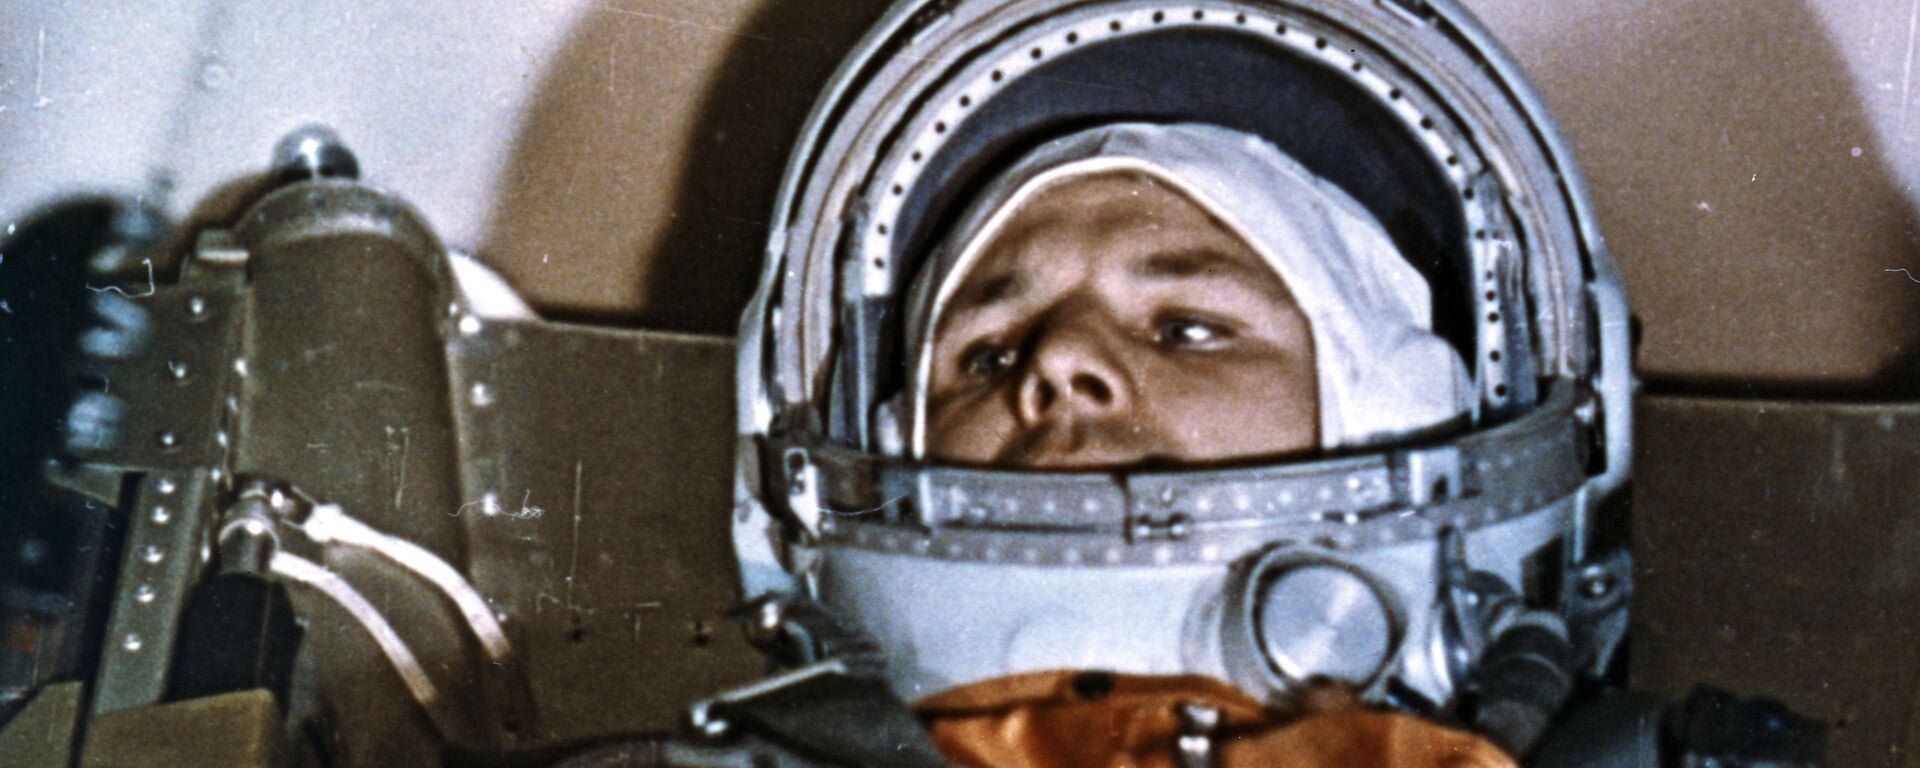 Cosmonauta Yuri Gagarin na espaçonave Vostok-1 antes do lançamento do cosmódromo de Baikonur, 12 de abril de 1961 - Sputnik Brasil, 1920, 12.04.2021